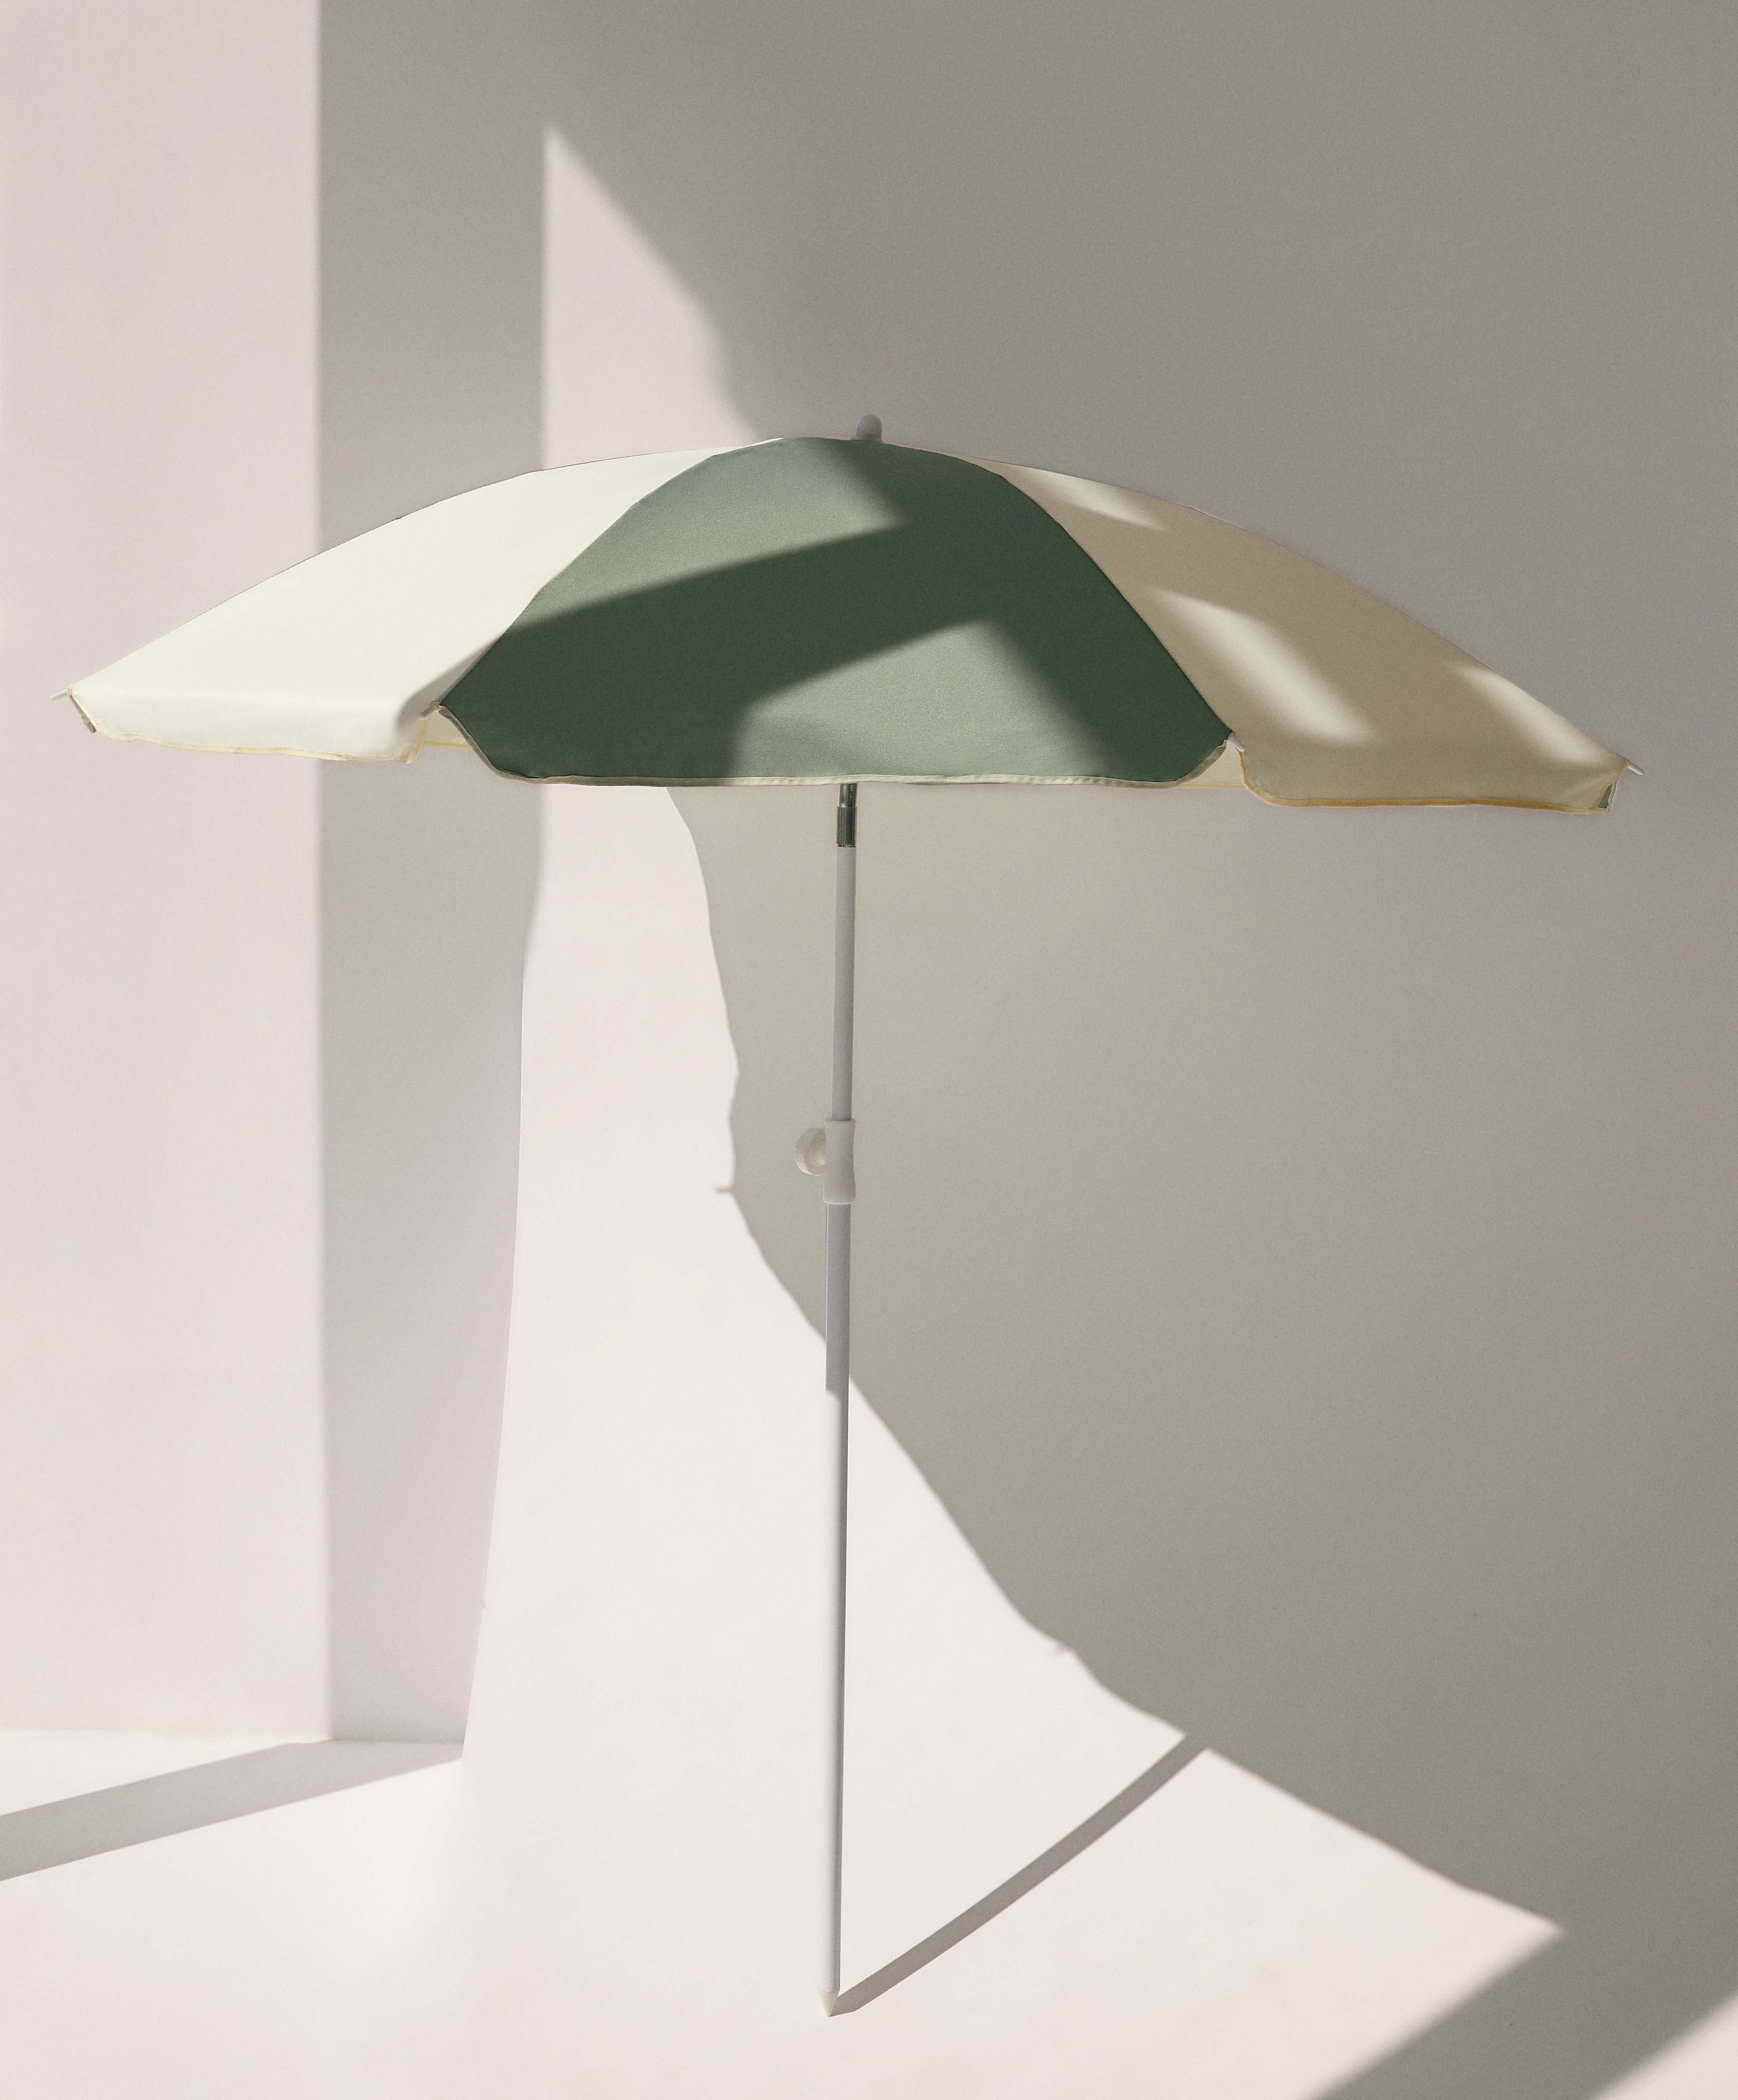 100% cotton beach umbrella